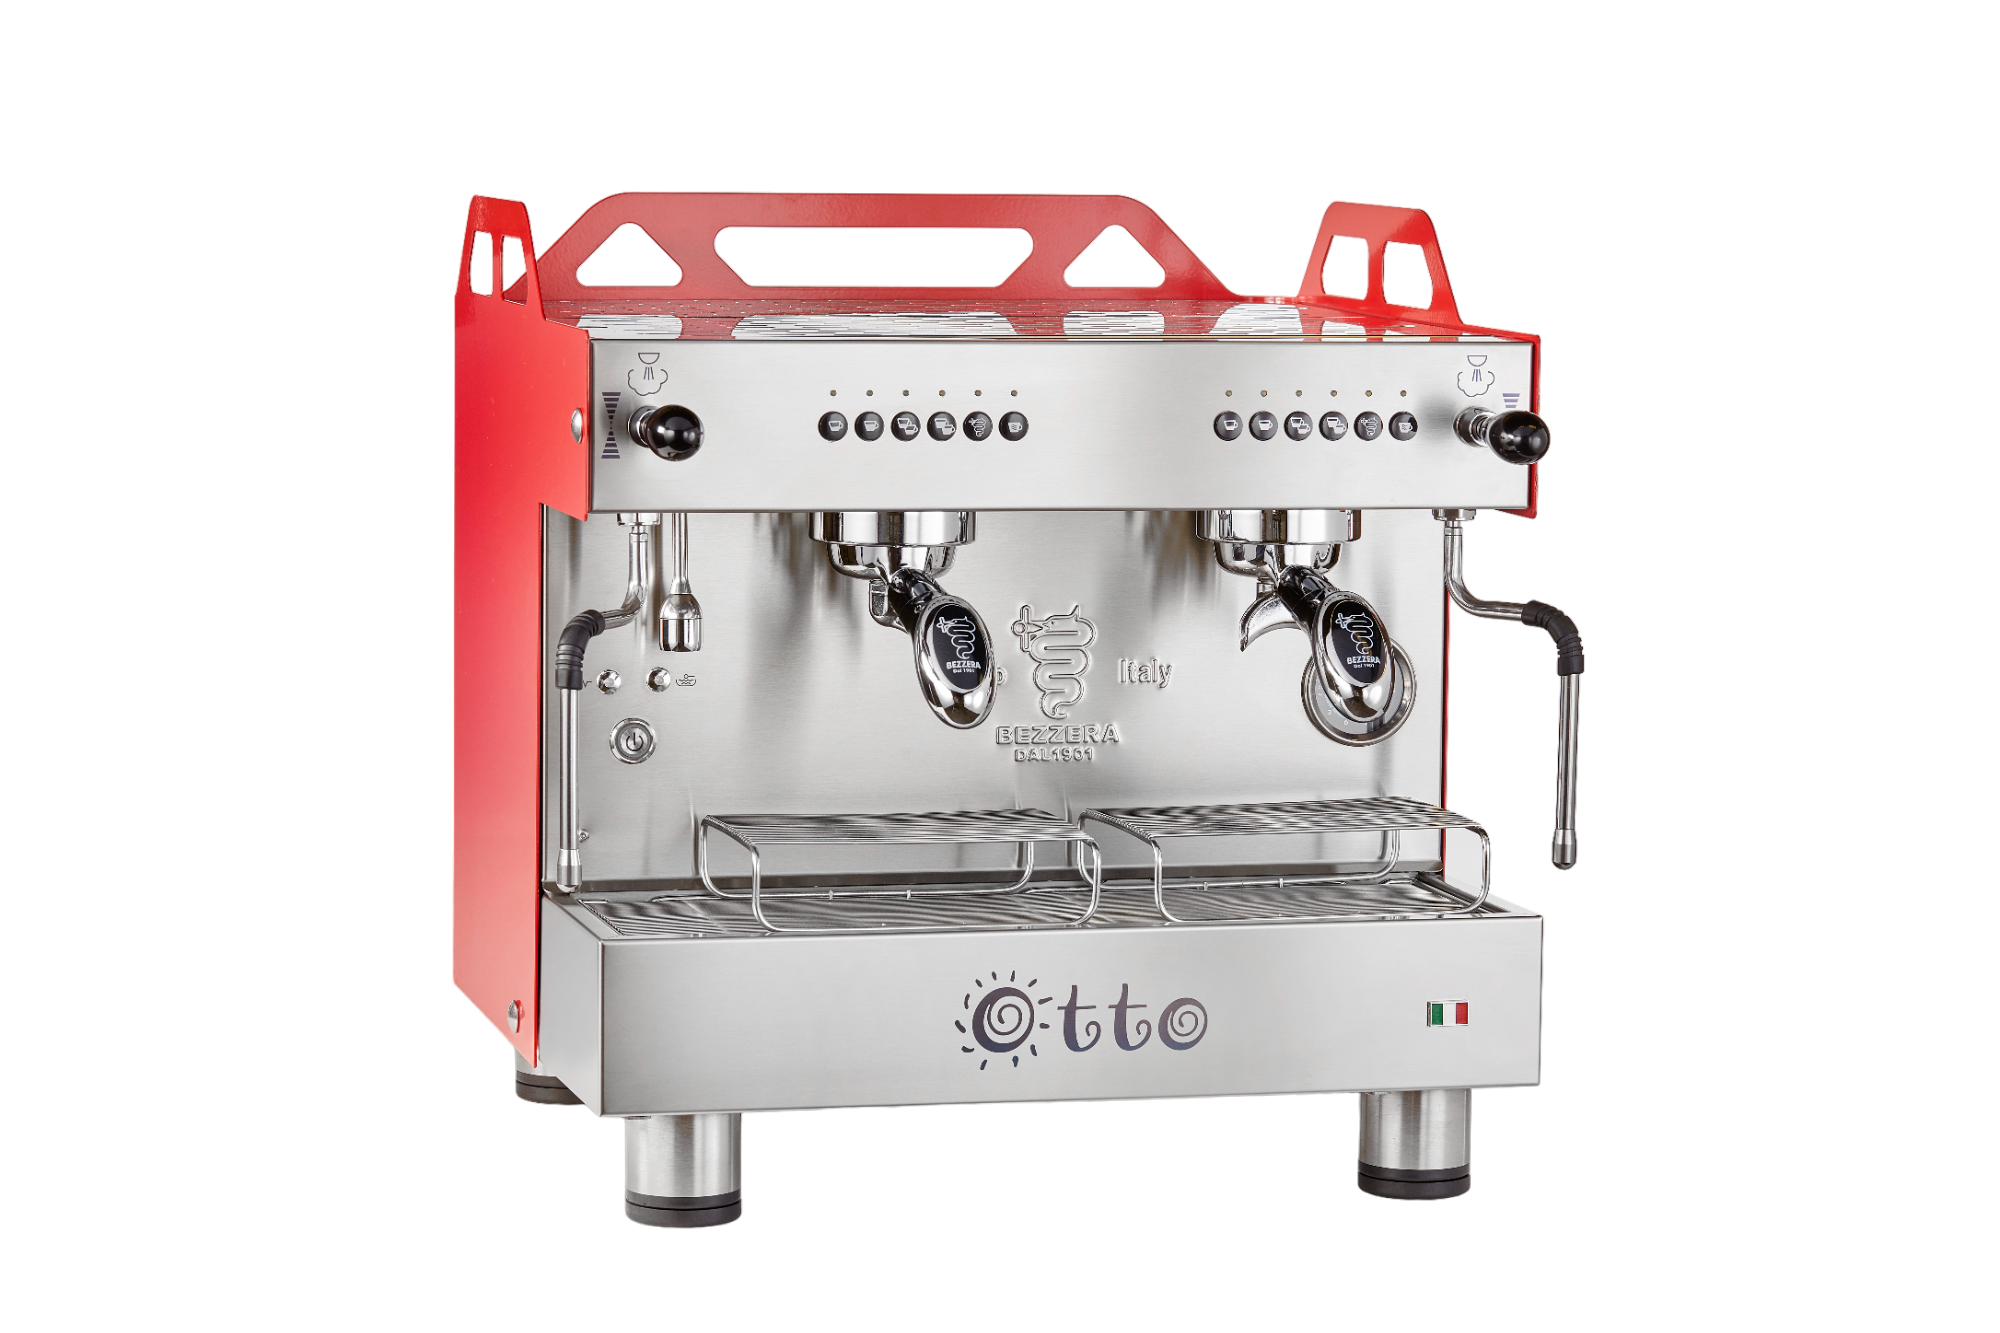 OTTOCDE2IS4 - Otto Espresso machine 2 groups compact 220V